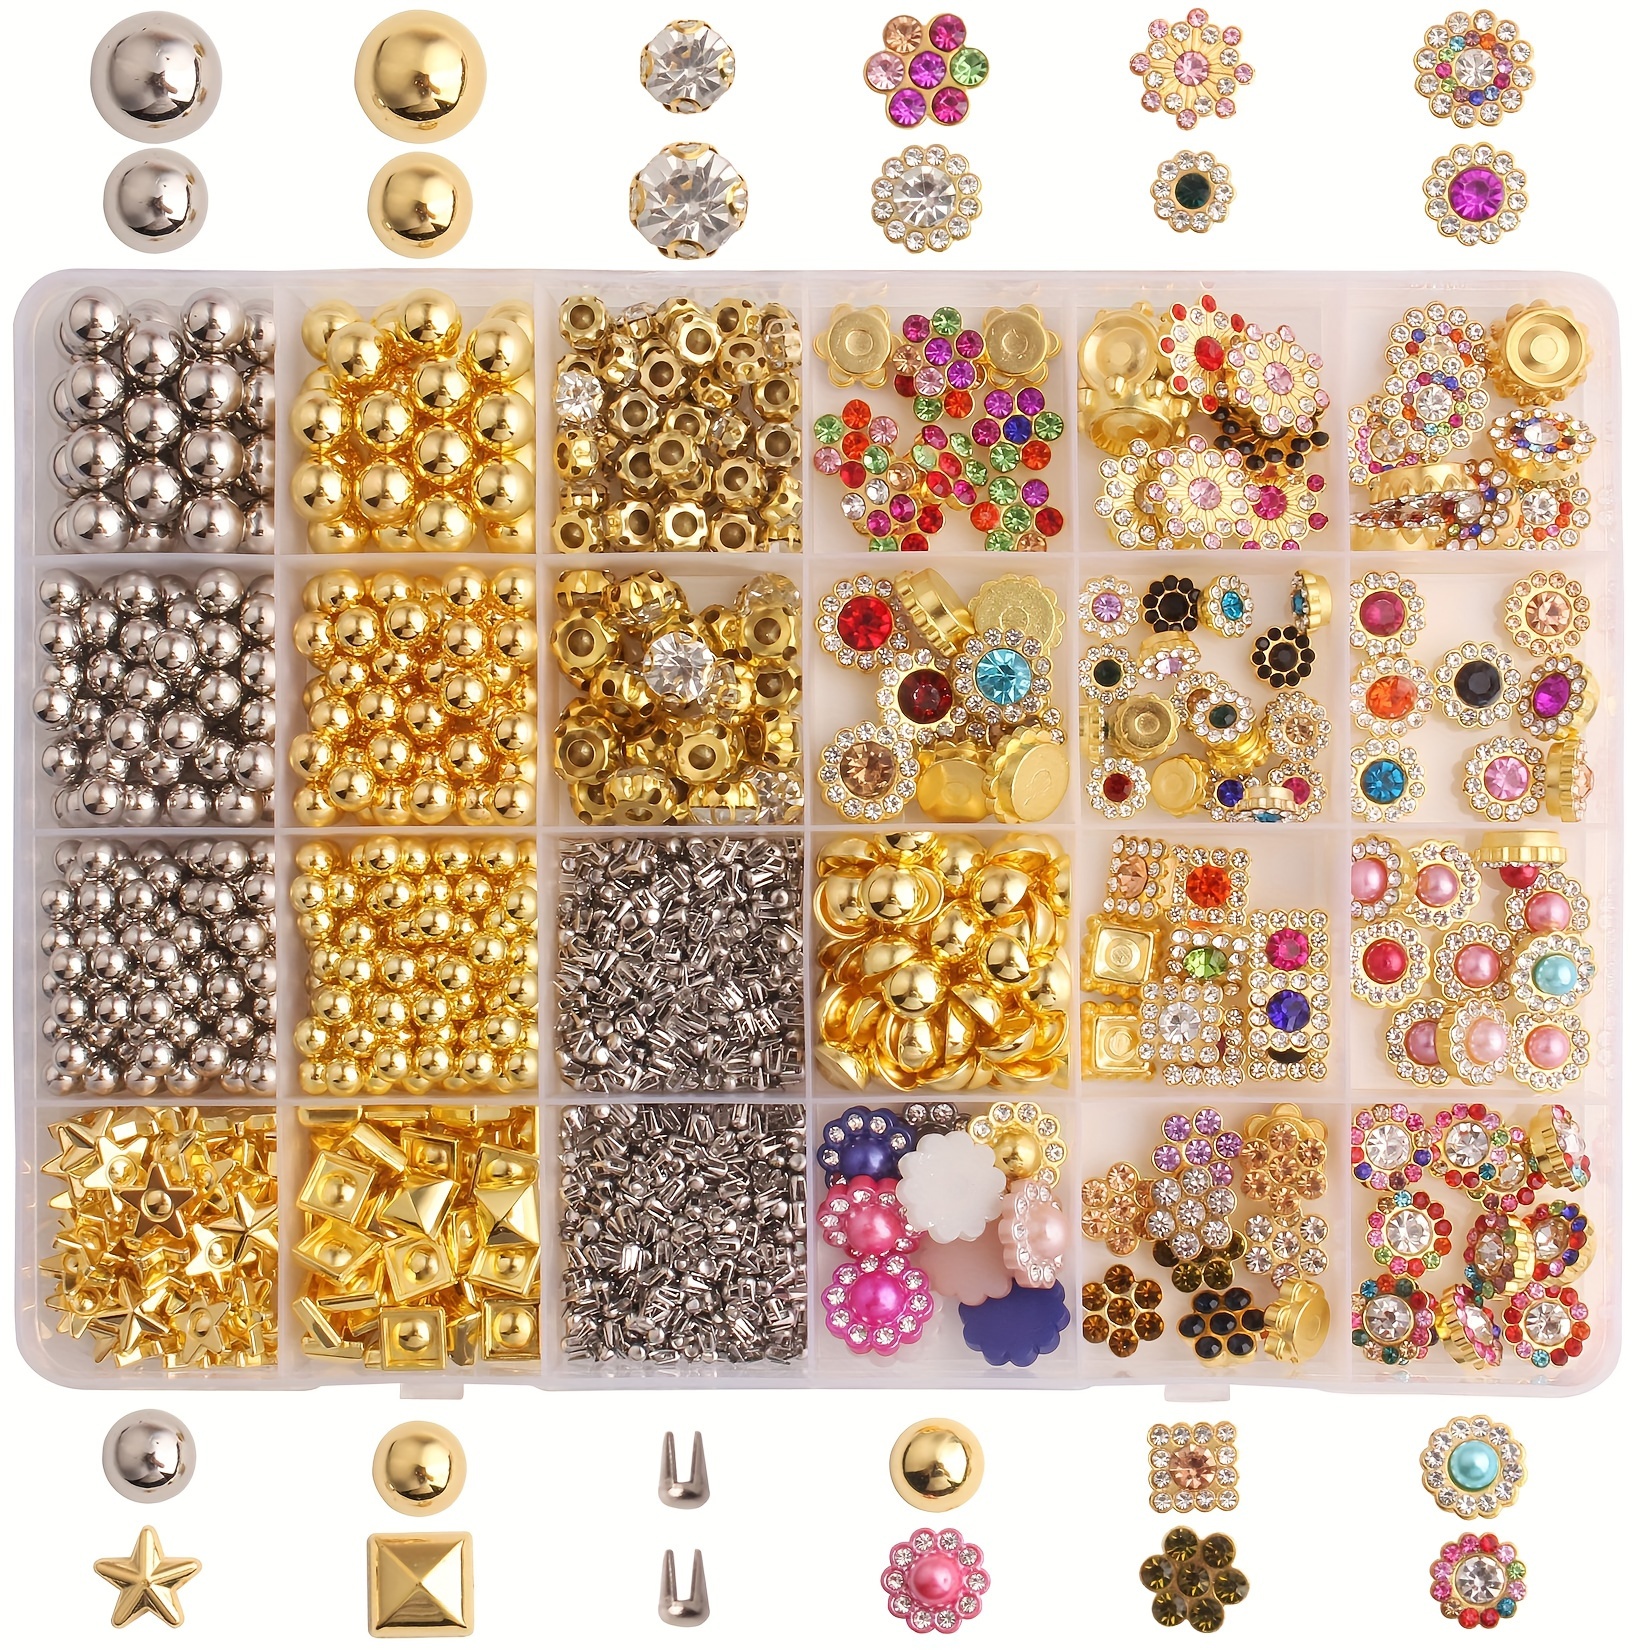 

Kit de fabrication de bijoux DIY avec 1700 perles rivets multicolores sur base en plastique, strass de formes assorties et perles rondes, 24 compartiments, décorations en forme de griffes